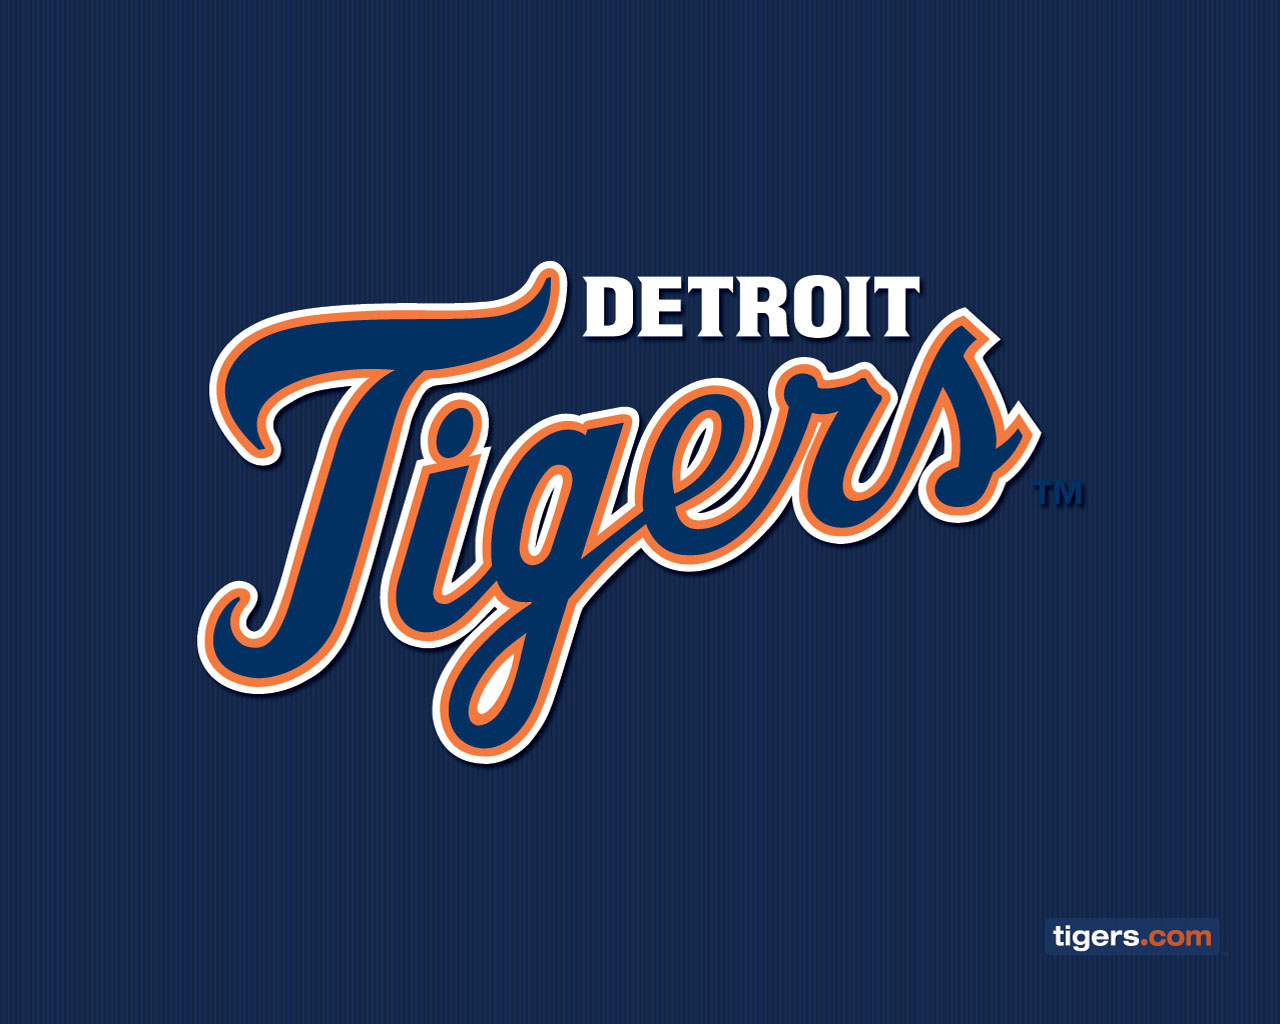 Detroit tigers wallpaper